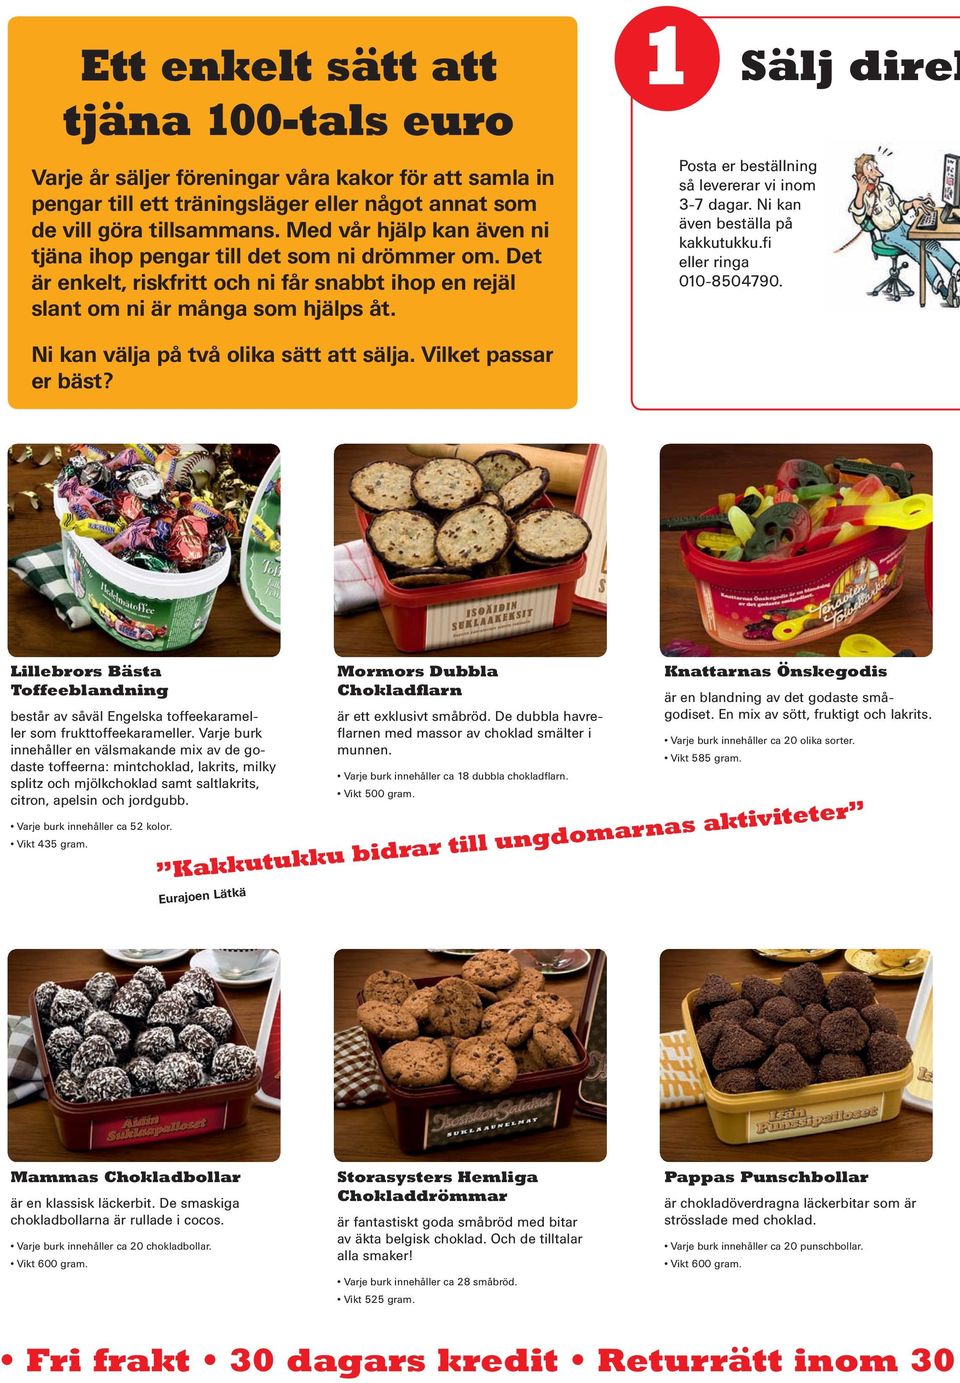 1 Sälj direk Posta er beställning så levererar vi inom 3-7 dagar. Ni kan även beställa på kakkutukku.fi eller ringa 010-8504790. Ni kan välja på två olika sätt att sälja. lket passar er bäst?